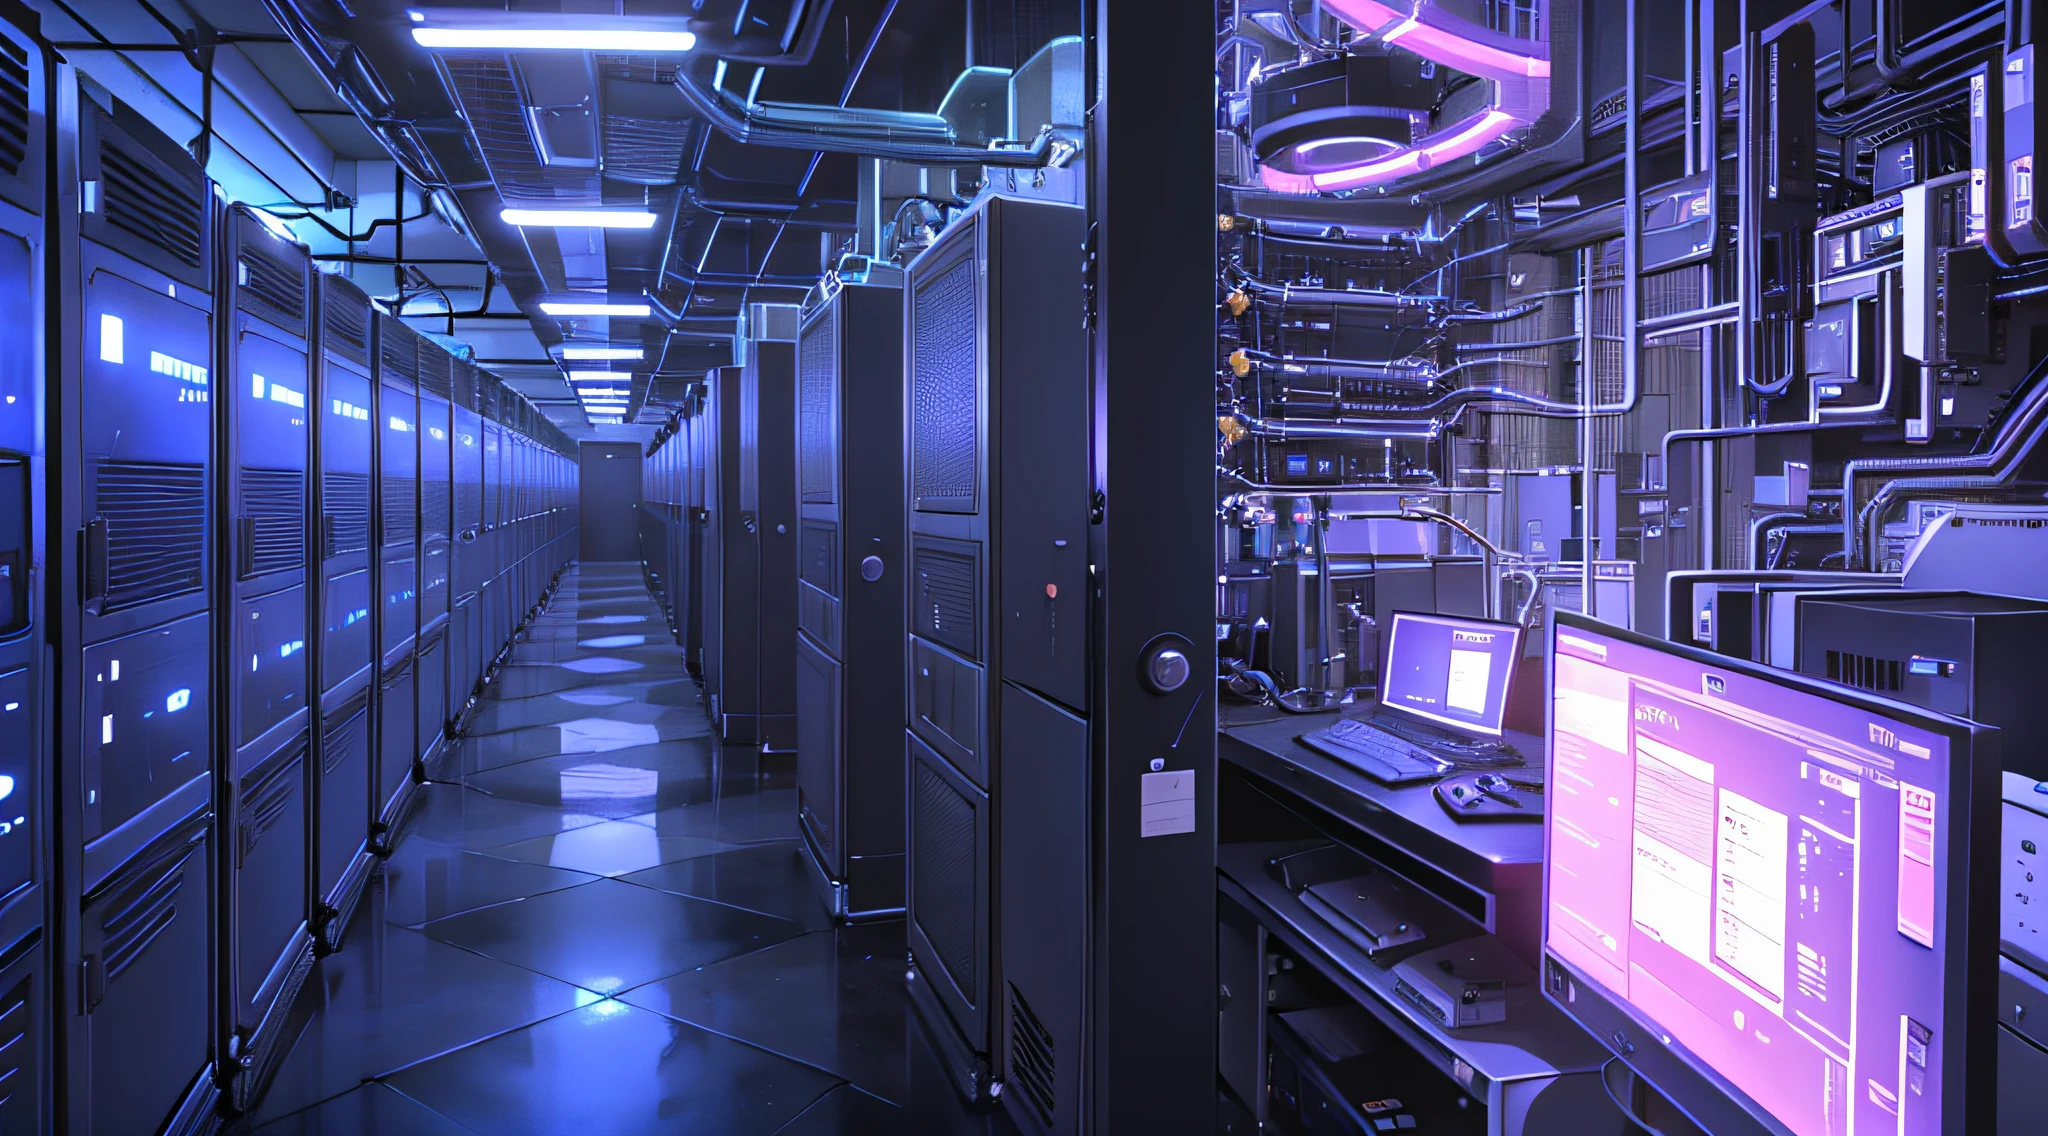 um corredor mal iluminado com fileiras de dados e telas de computador, o plano de fundo é a sala do servidor de dados, invadindo o mainframe, espaço cibernético, em data center realista, 3840x2160, 3840 x 2160, fundo do corredor da nave espacial, arquitetura cibernética, ciberespaço surreal, em data center detalhado,tecnologia de servidor azul escuro azul claro neon --auto --s2